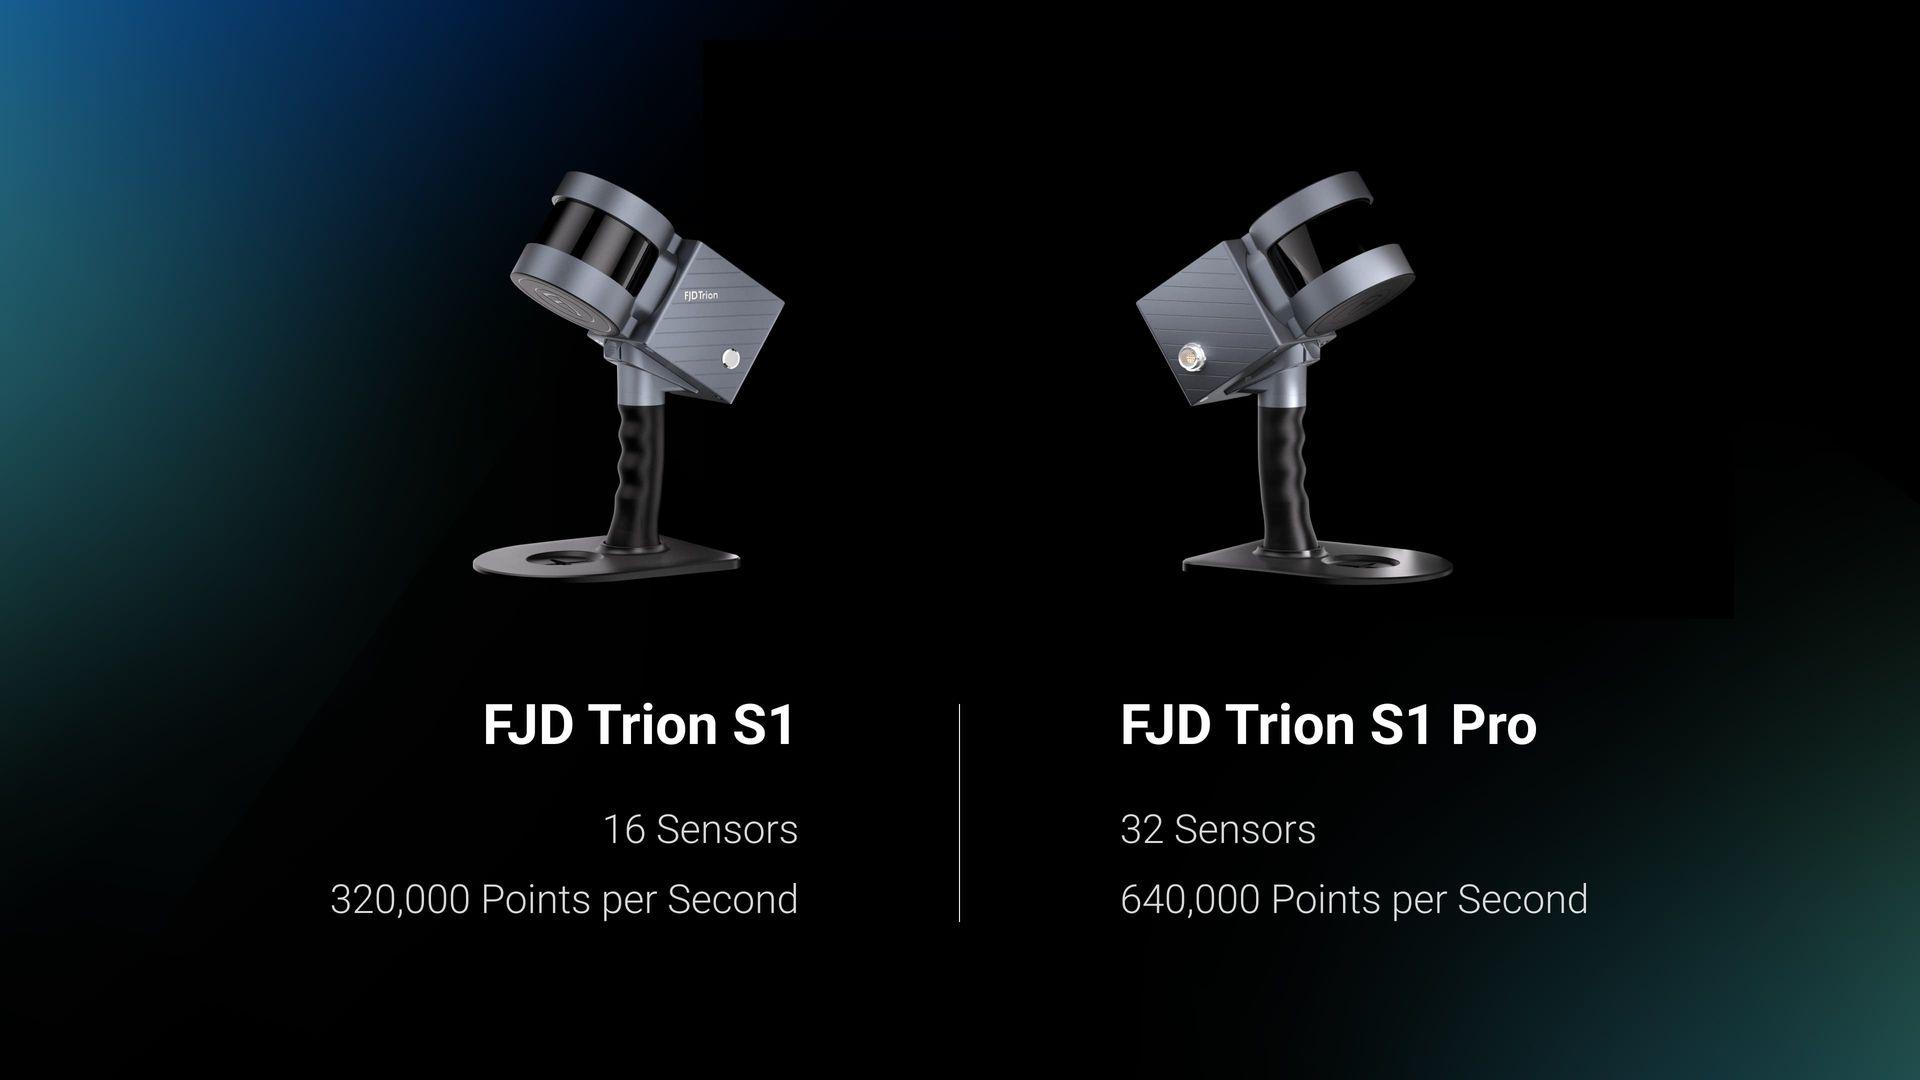 Steigern Sie Ihre Scan-Fähigkeiten mit dem FJD Trion S1 Pro, einer fortgeschrittenen Version des S1. Aufbauend auf dem leichten und tragbaren Design des S1 bietet der S1 Pro mit seiner aktualisierten Hardware noch höhere Genauigkeit und Effizienz.